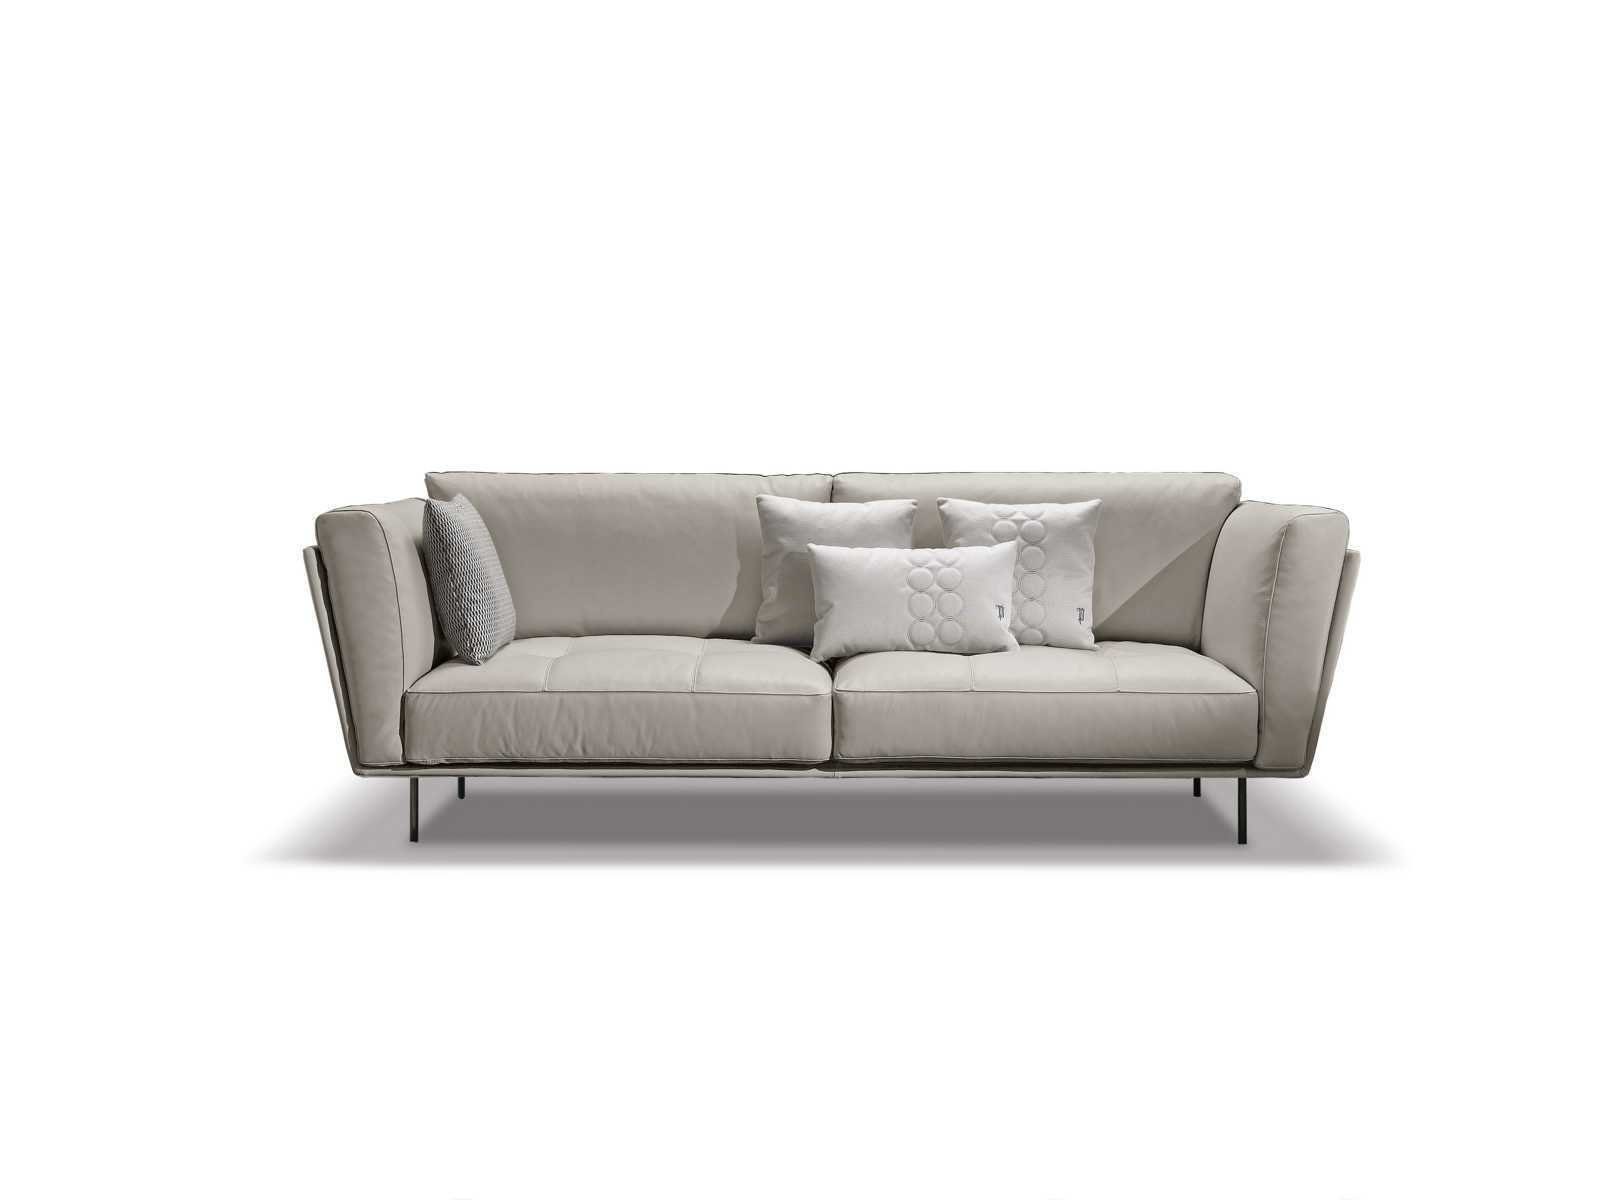 Beige, Made JVmoebel Couch Sofa Sitzer 3 Europe Modern Sofas Luxus Couches Weiß in Sofa Gepolstert Stoff